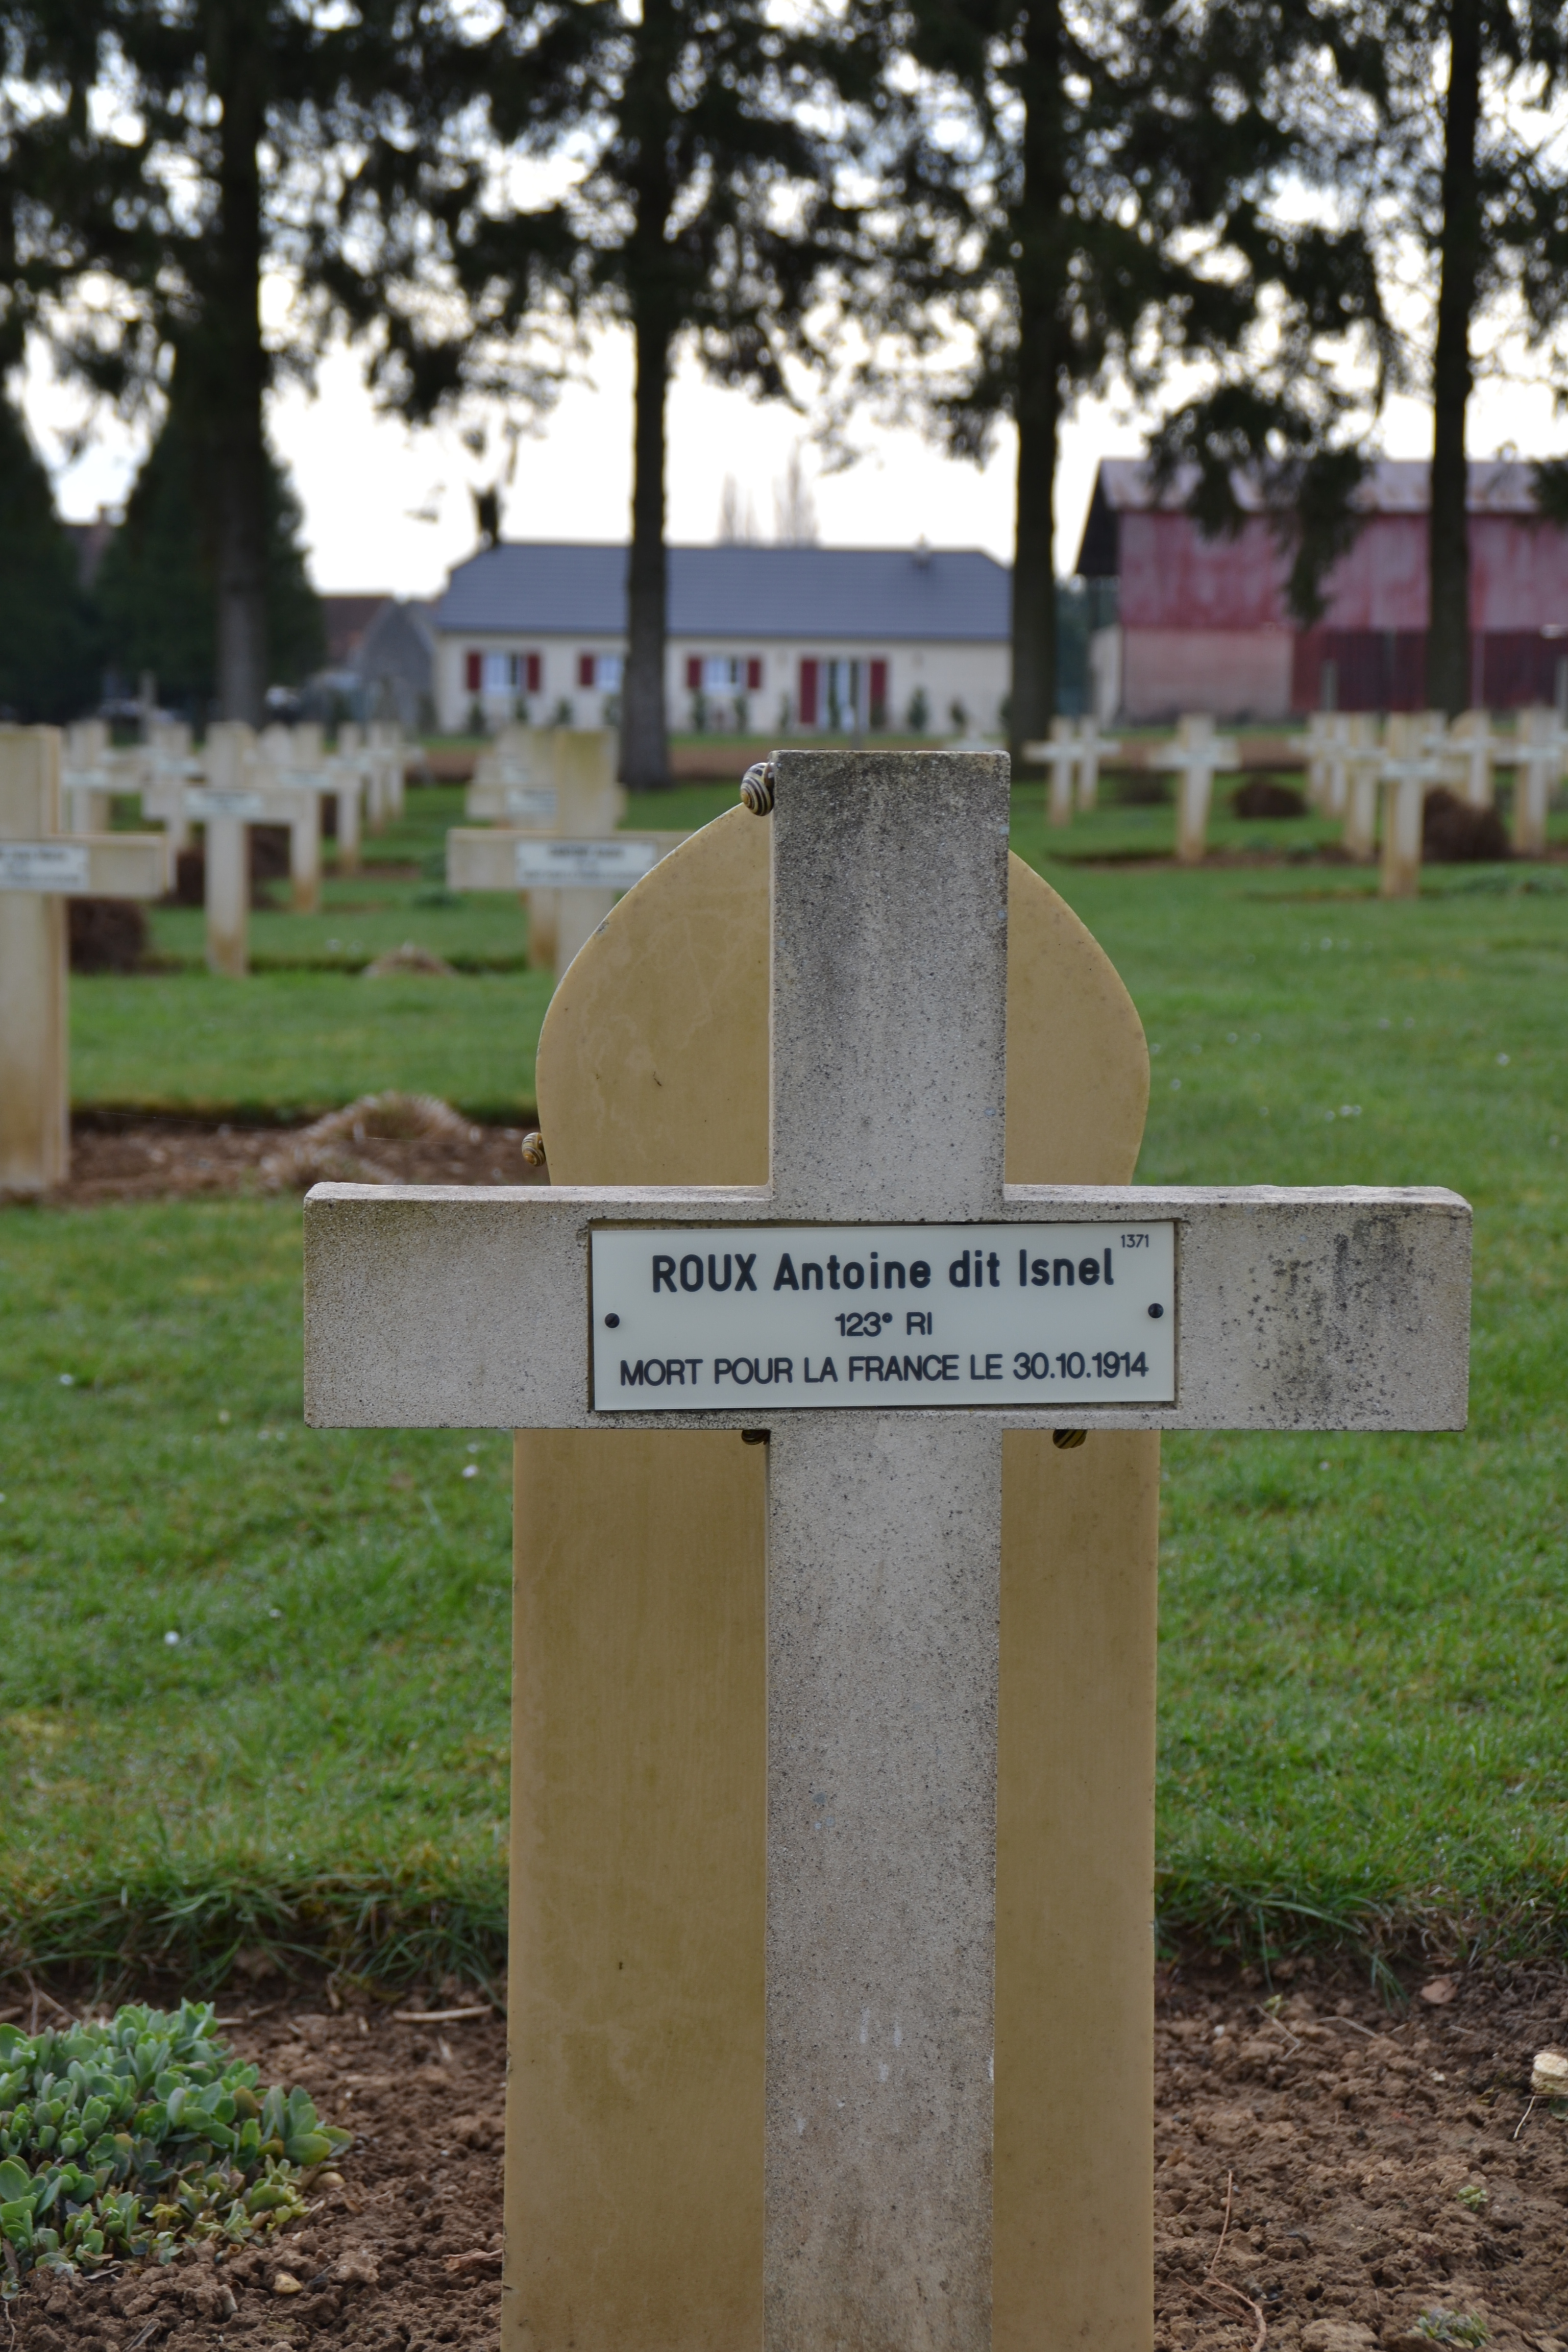 Roux Antoine dit Isnel, sépulture à Cerny en Laonnois